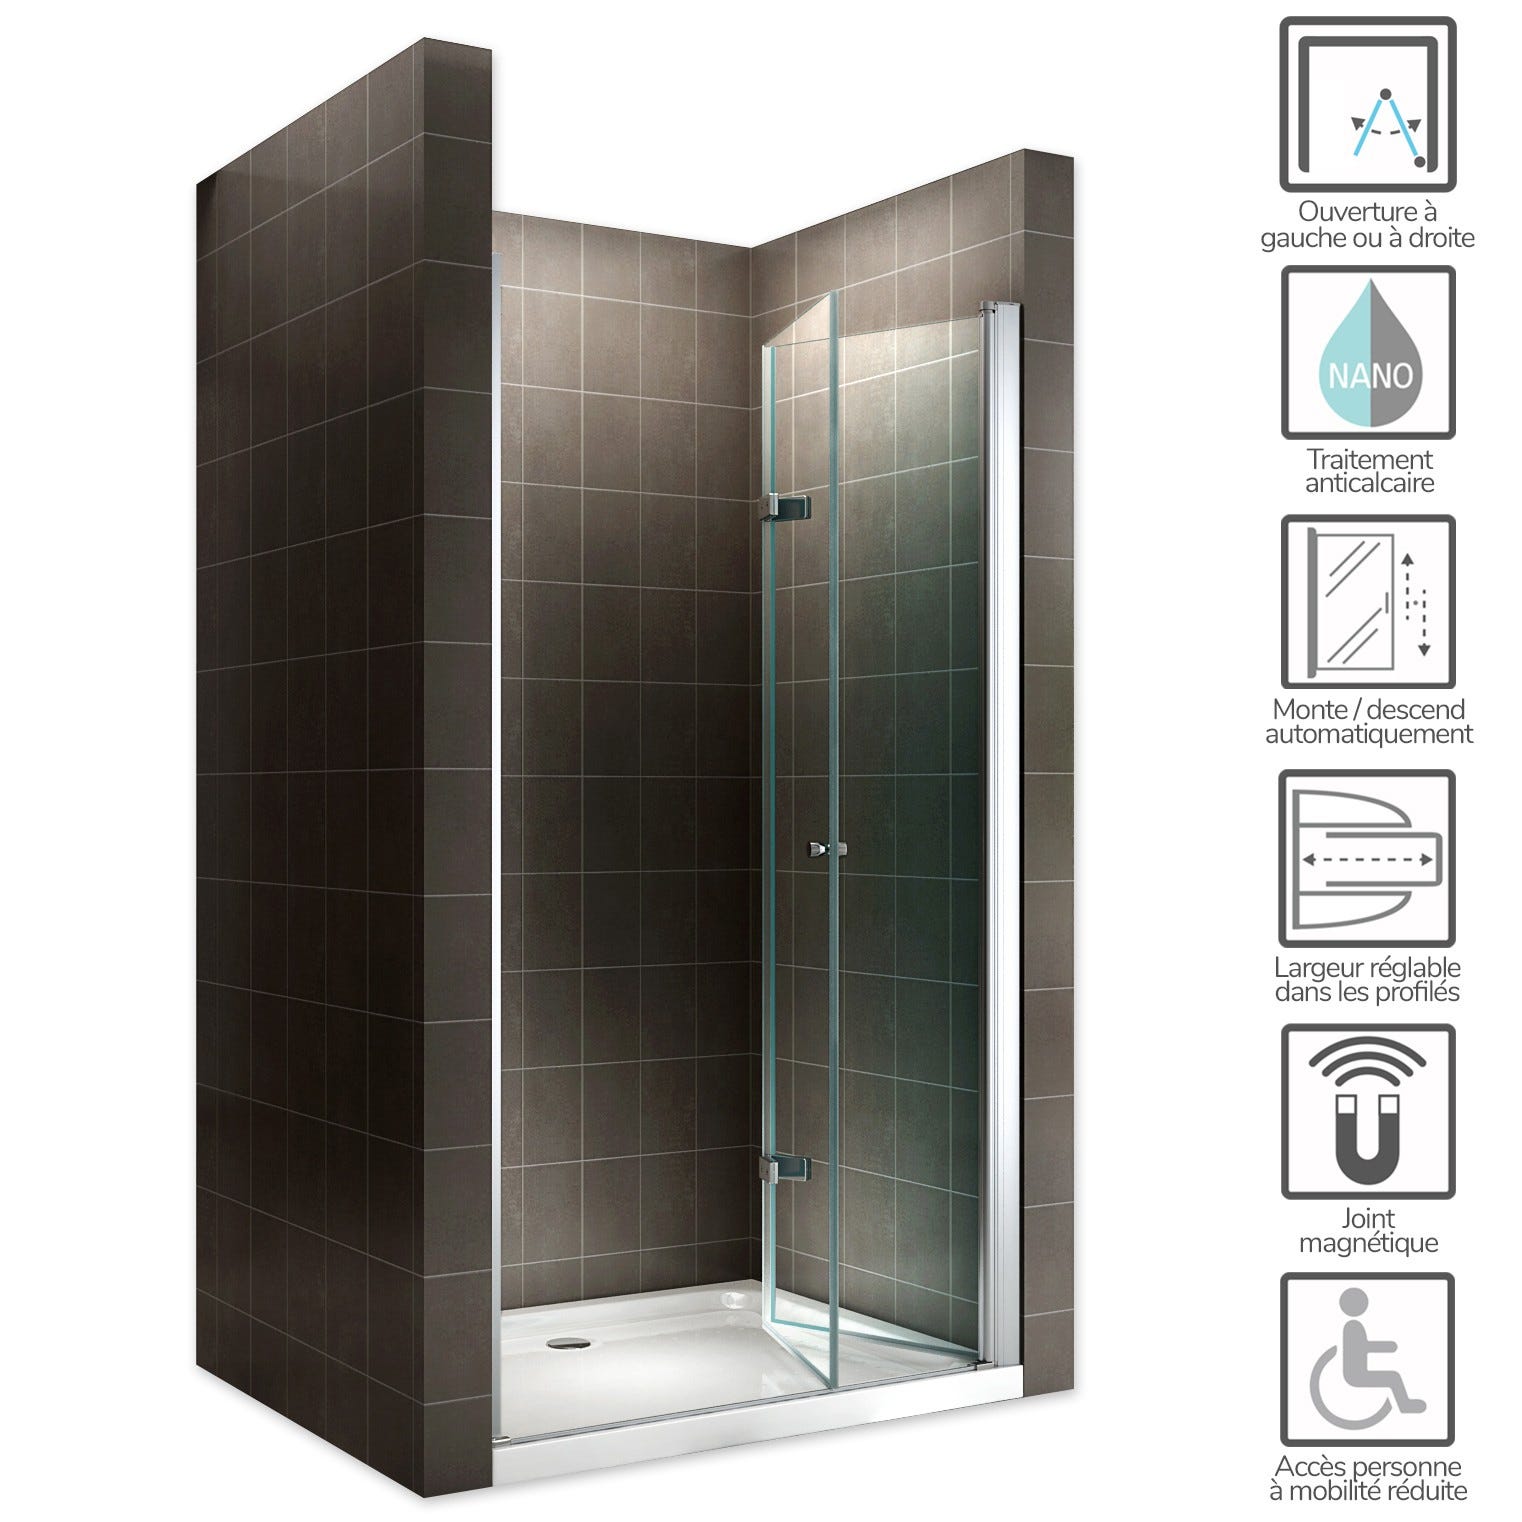 MONA Porte de douche pliante H 195 cm largeur réglable de 72 à 76 cm verre transparent 1